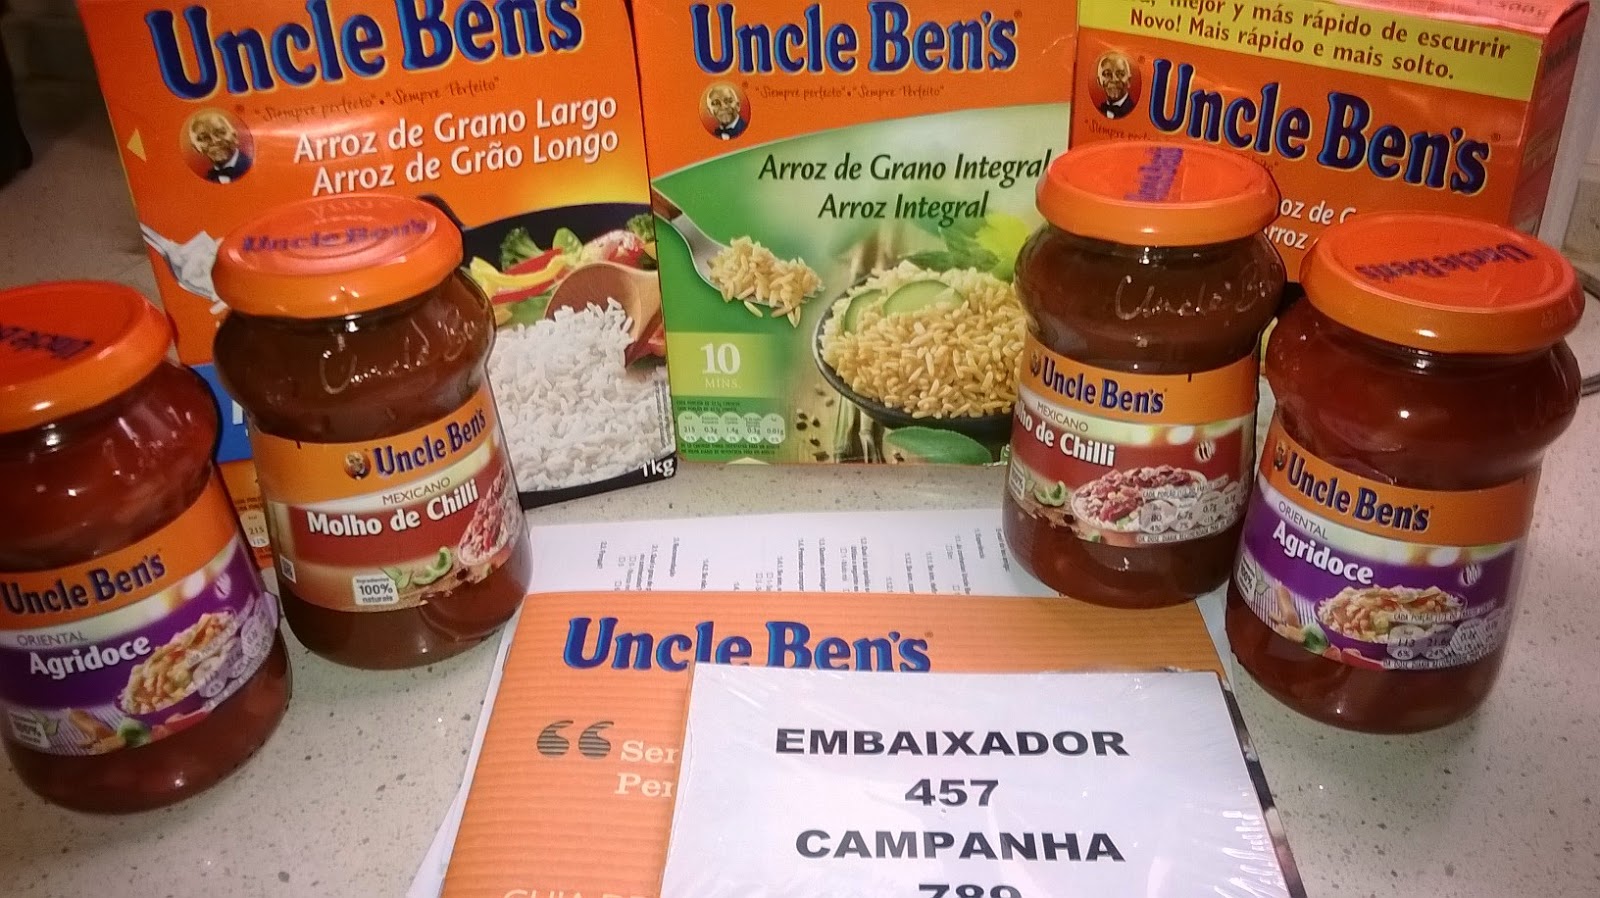 Campanha Uncle Ben's, da Youzz - Almoço expresso em 10 minutos